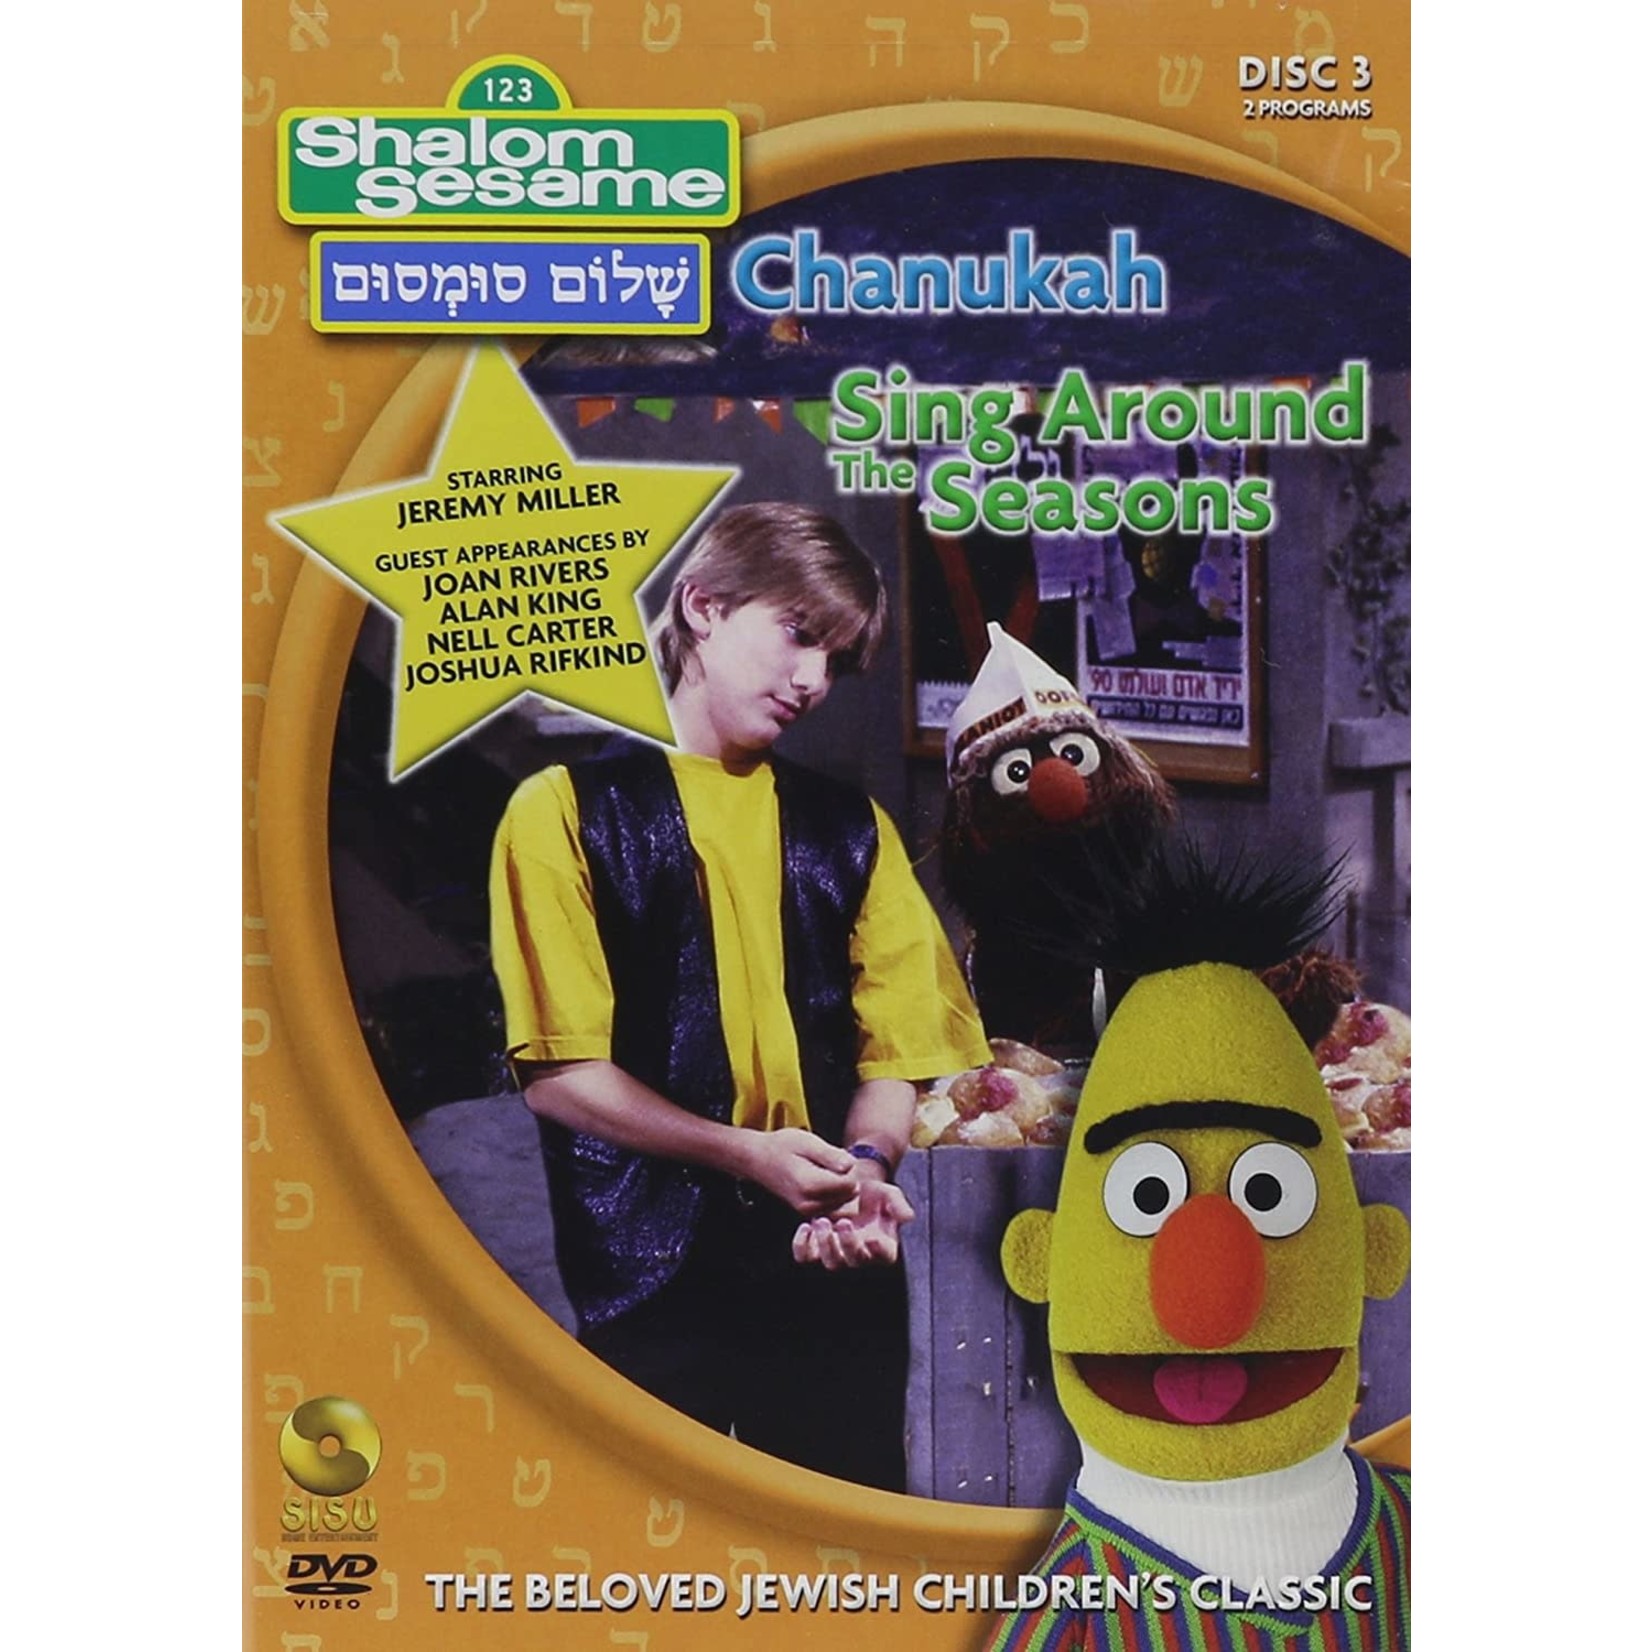 Shalom Sesame DVD Volume 3 - Chanukah